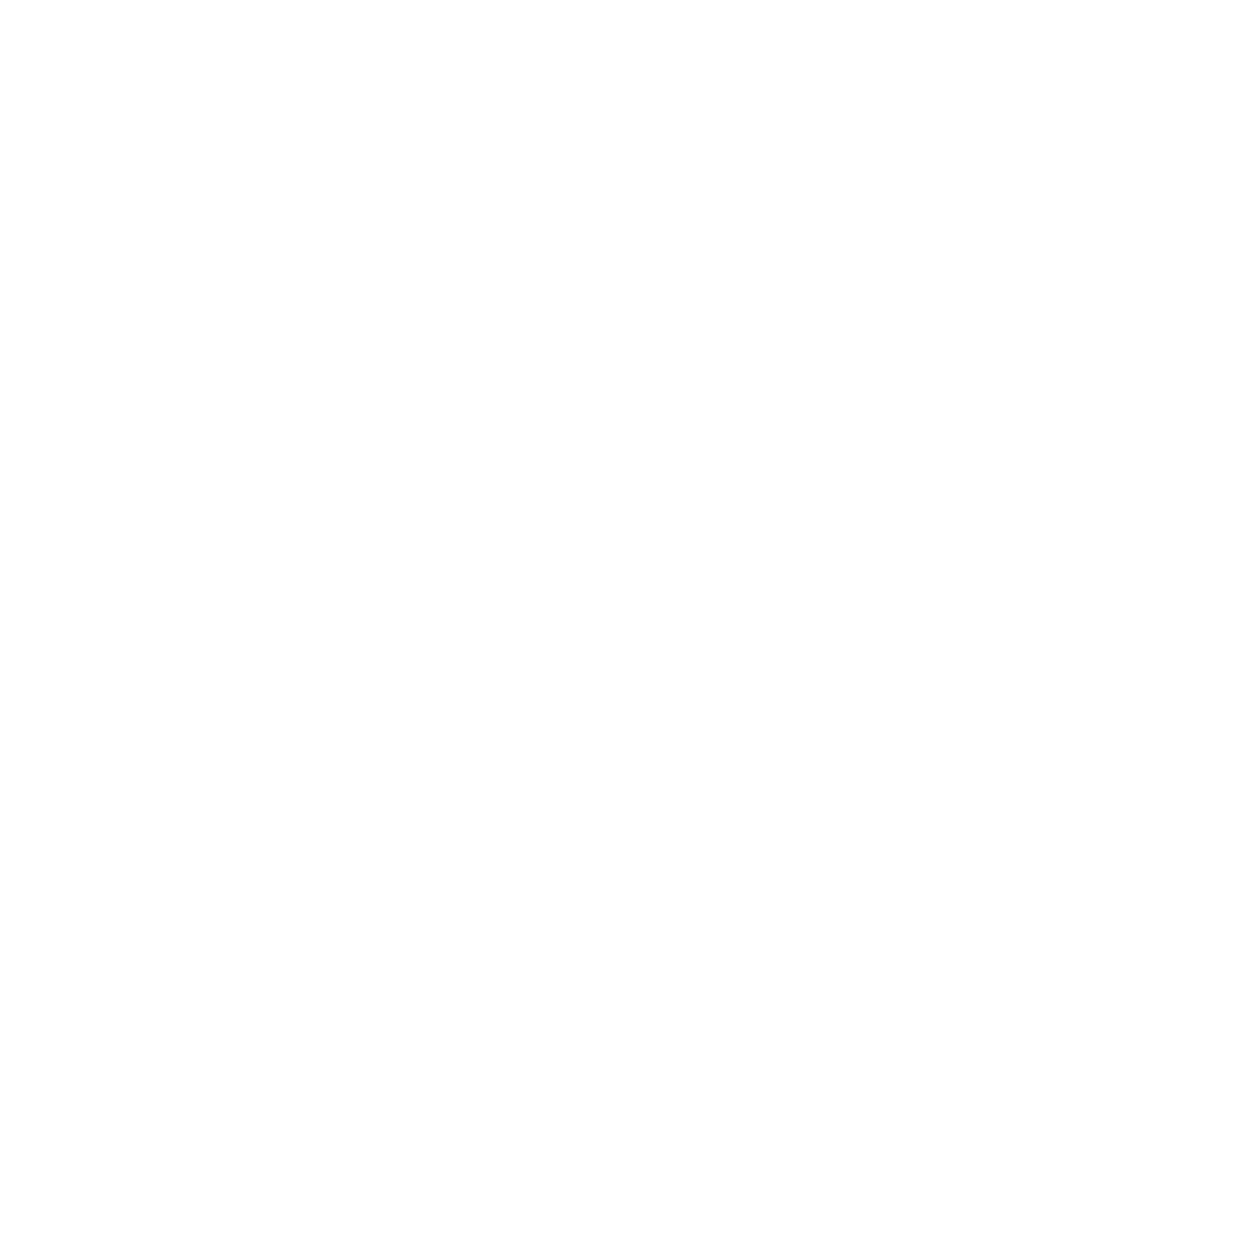 FireGear